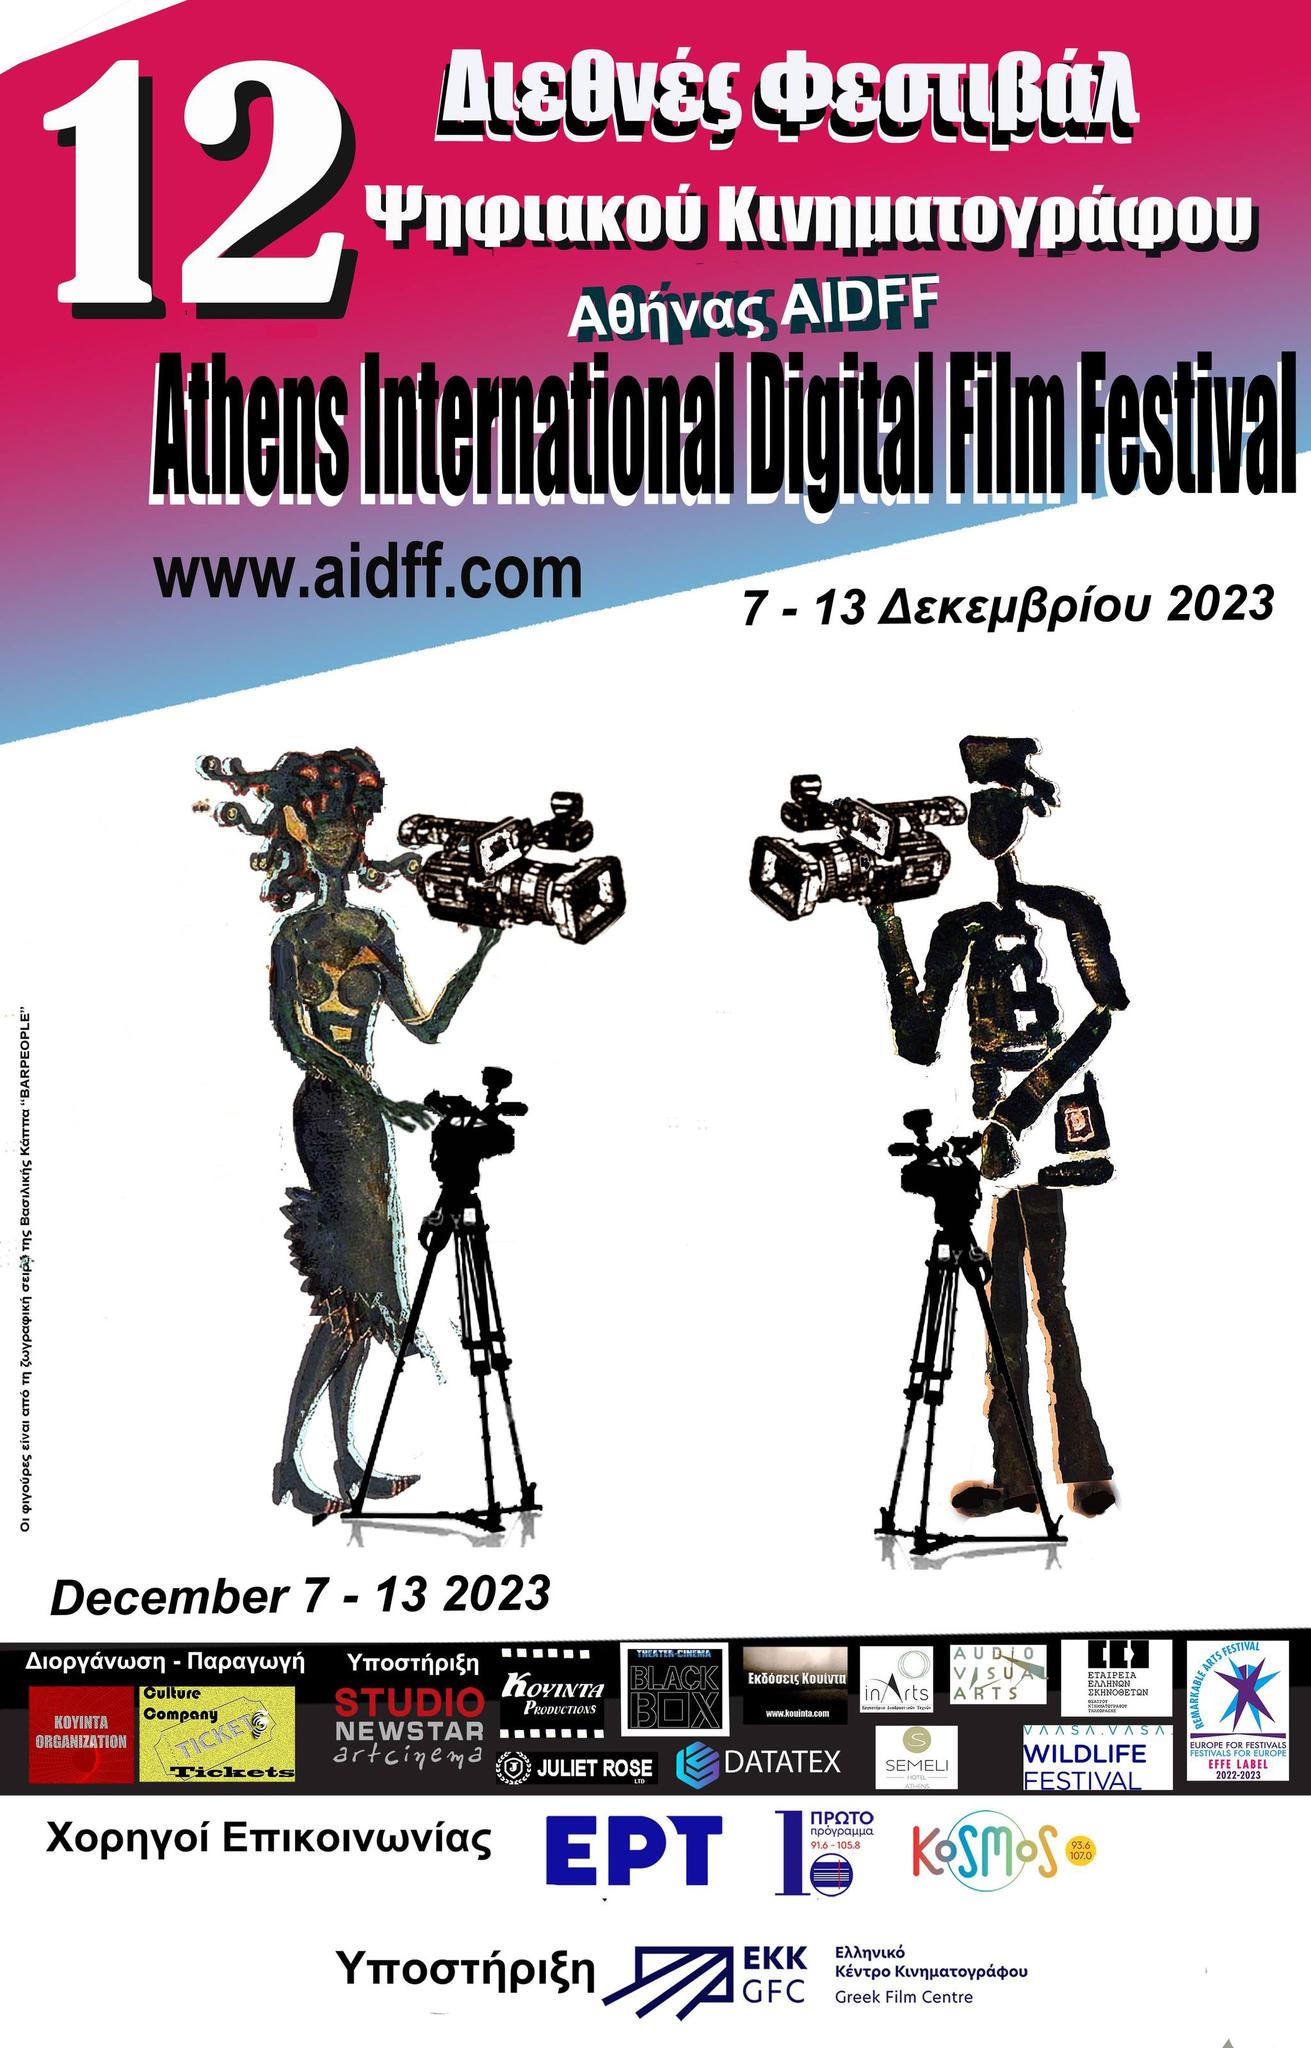 Διεθνές Φεστιβάλ Ψηφιακού Κινηματογράφου Αθήνας  Athens International Digital Film Festival, AIDFF